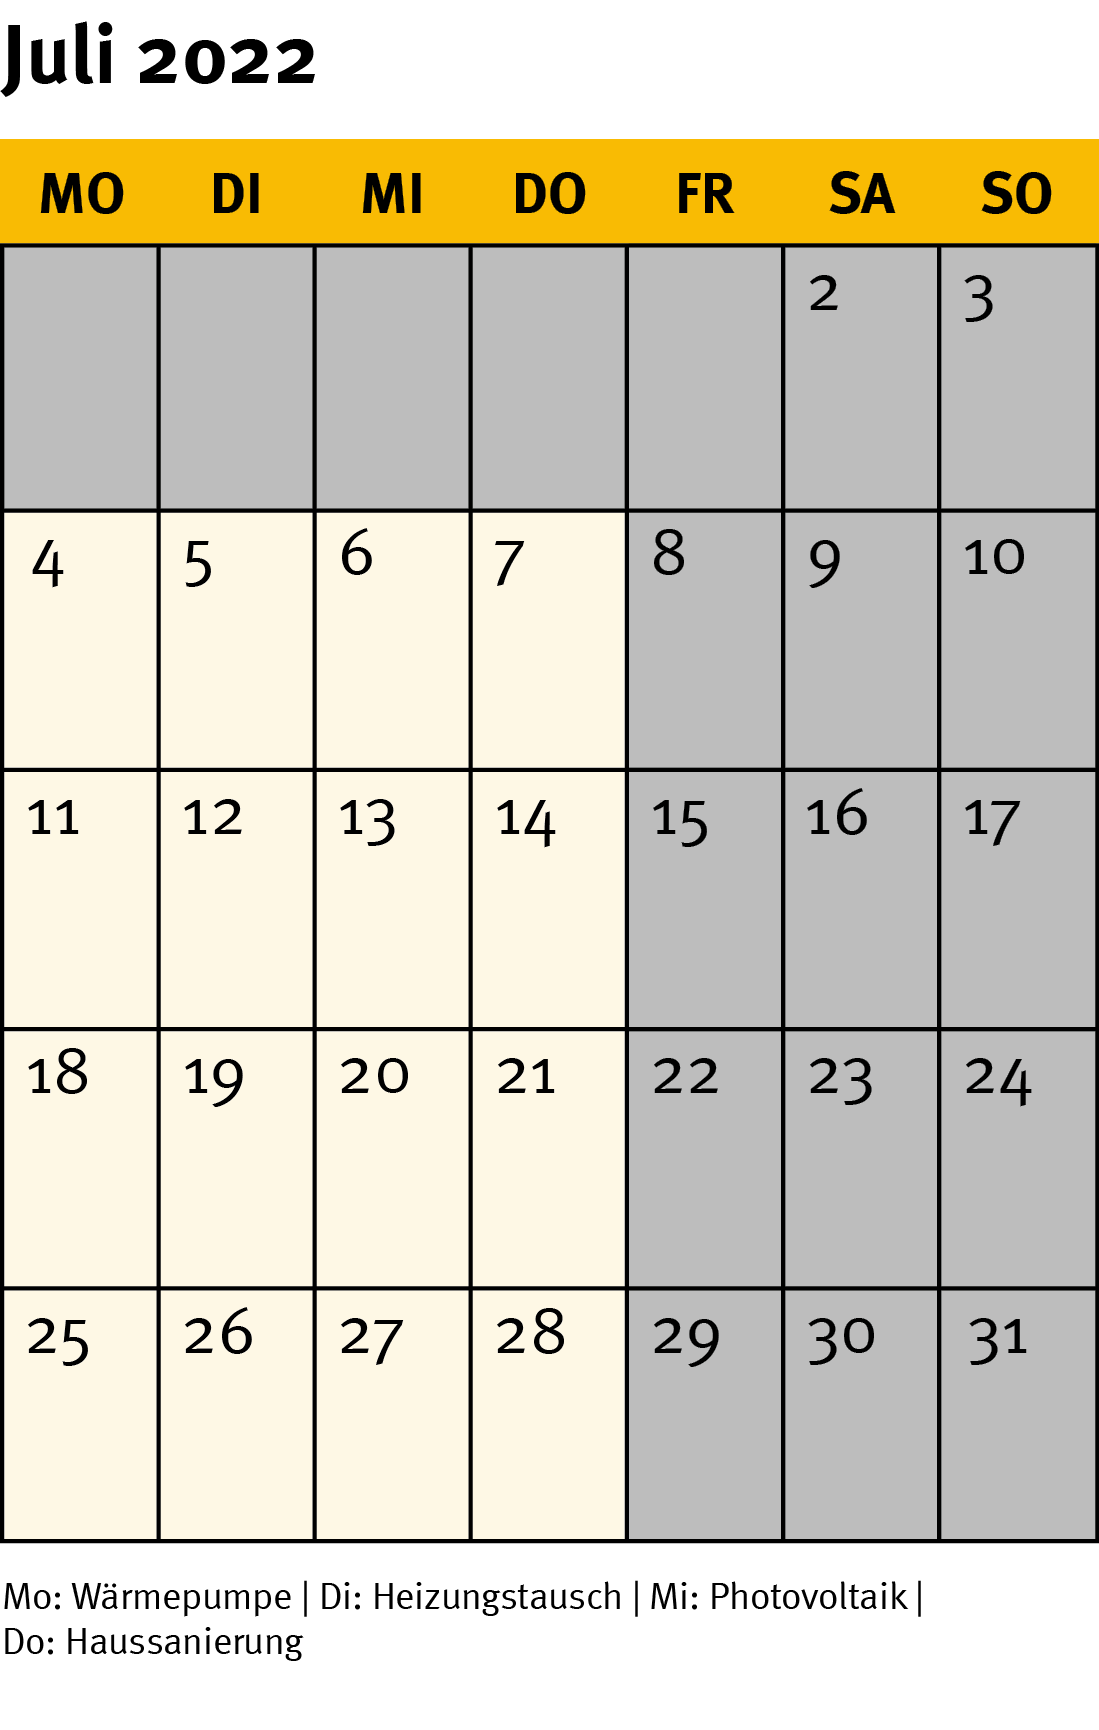 Die Grafik zeigt ein Kalenderblatt für den Monat Juli 2022.